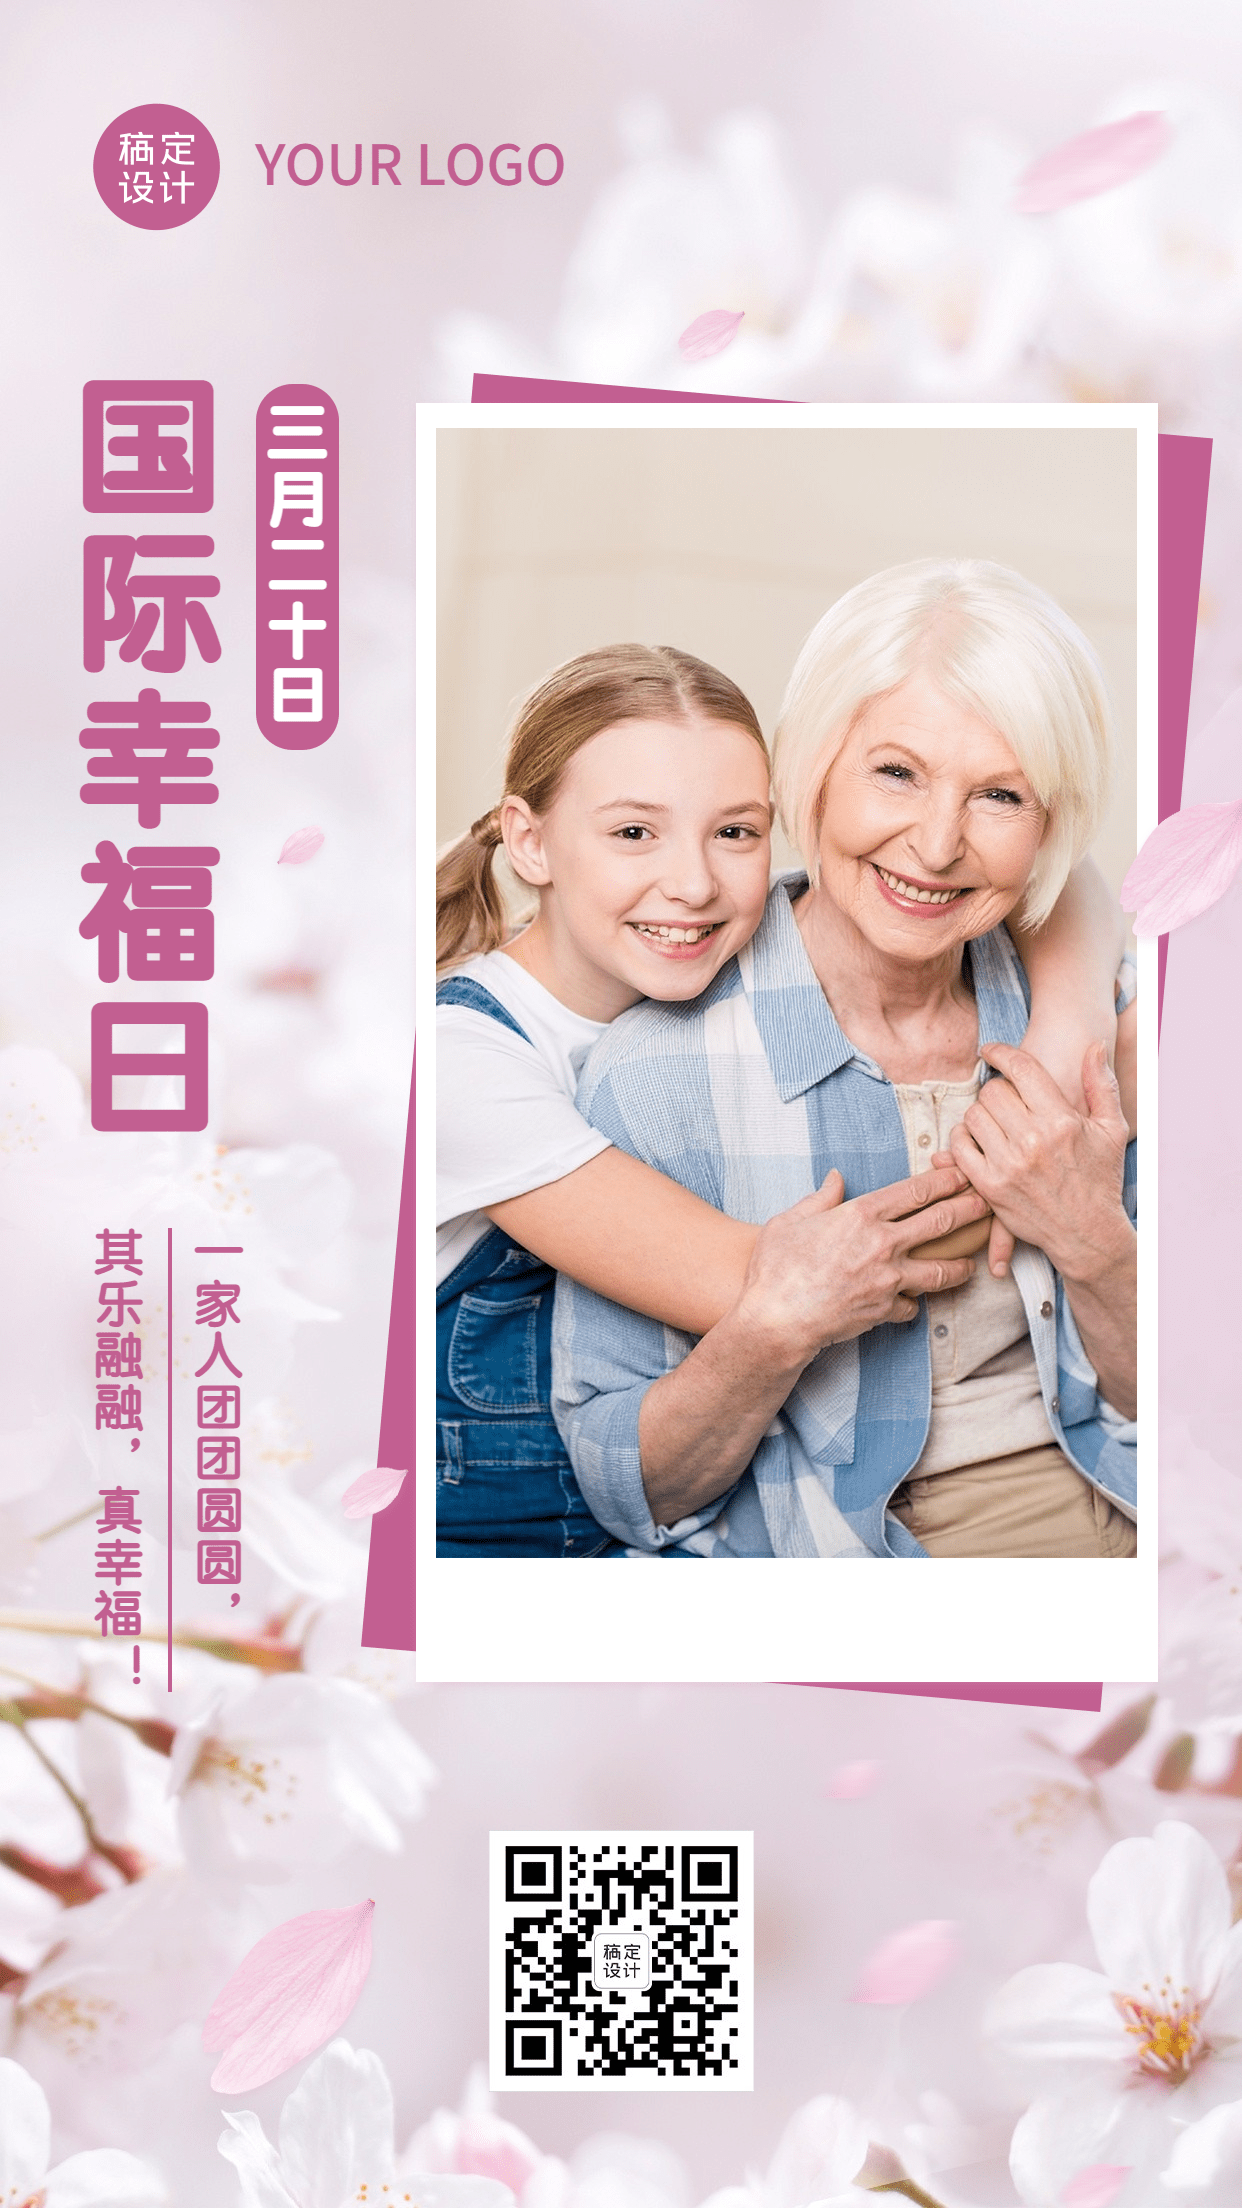 3.20国际幸福日节日宣传晒照实景手机海报